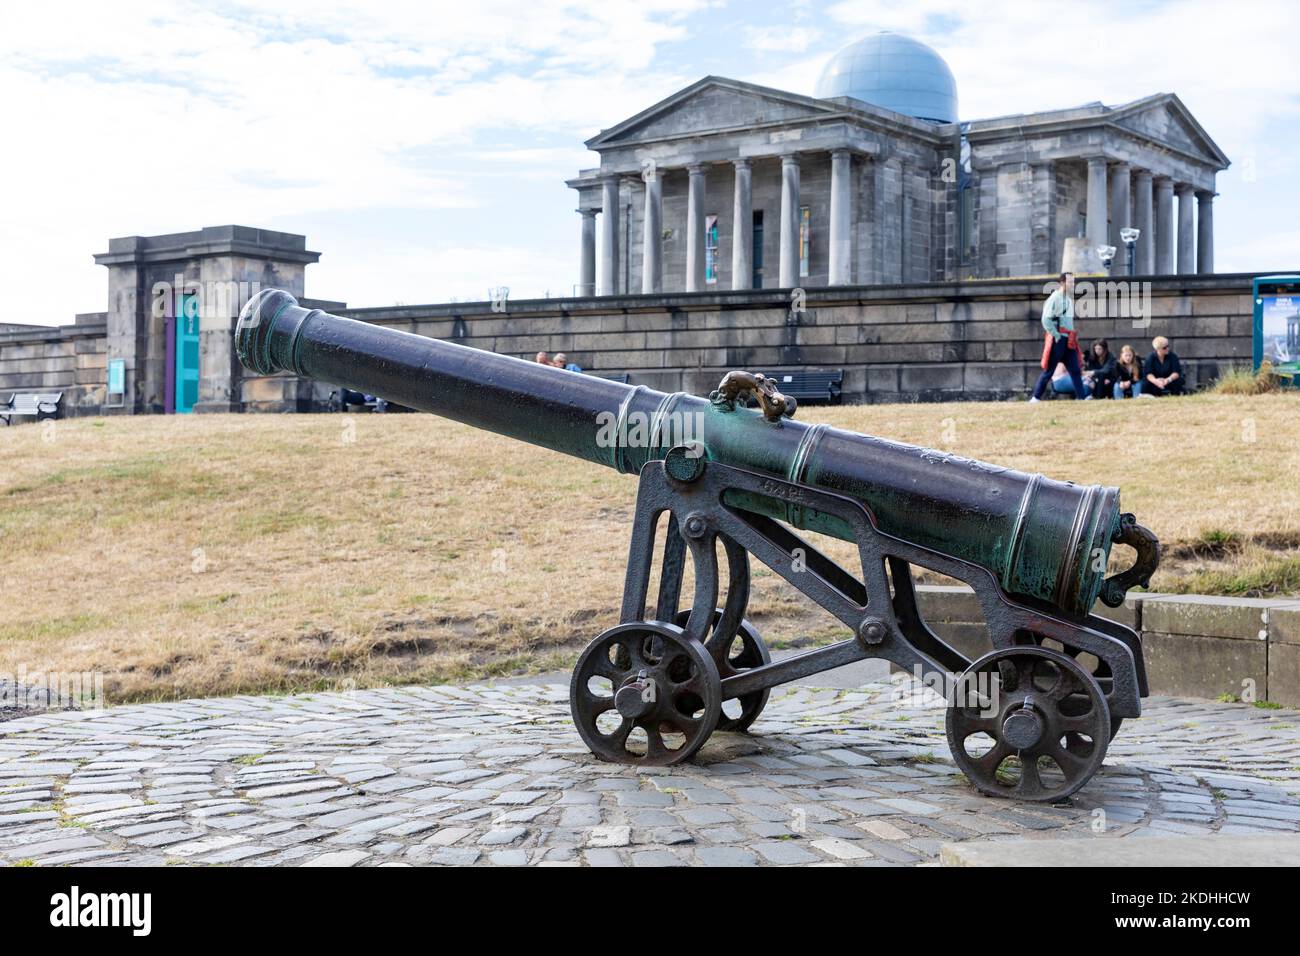 Die portugiesische Kanone auf Calton Hill Edinburgh, im 15.. Jahrhundert gegossen, eine von 6 ursprünglichen Kanonen, Edinburgh, Schottland, Großbritannien Stockfoto